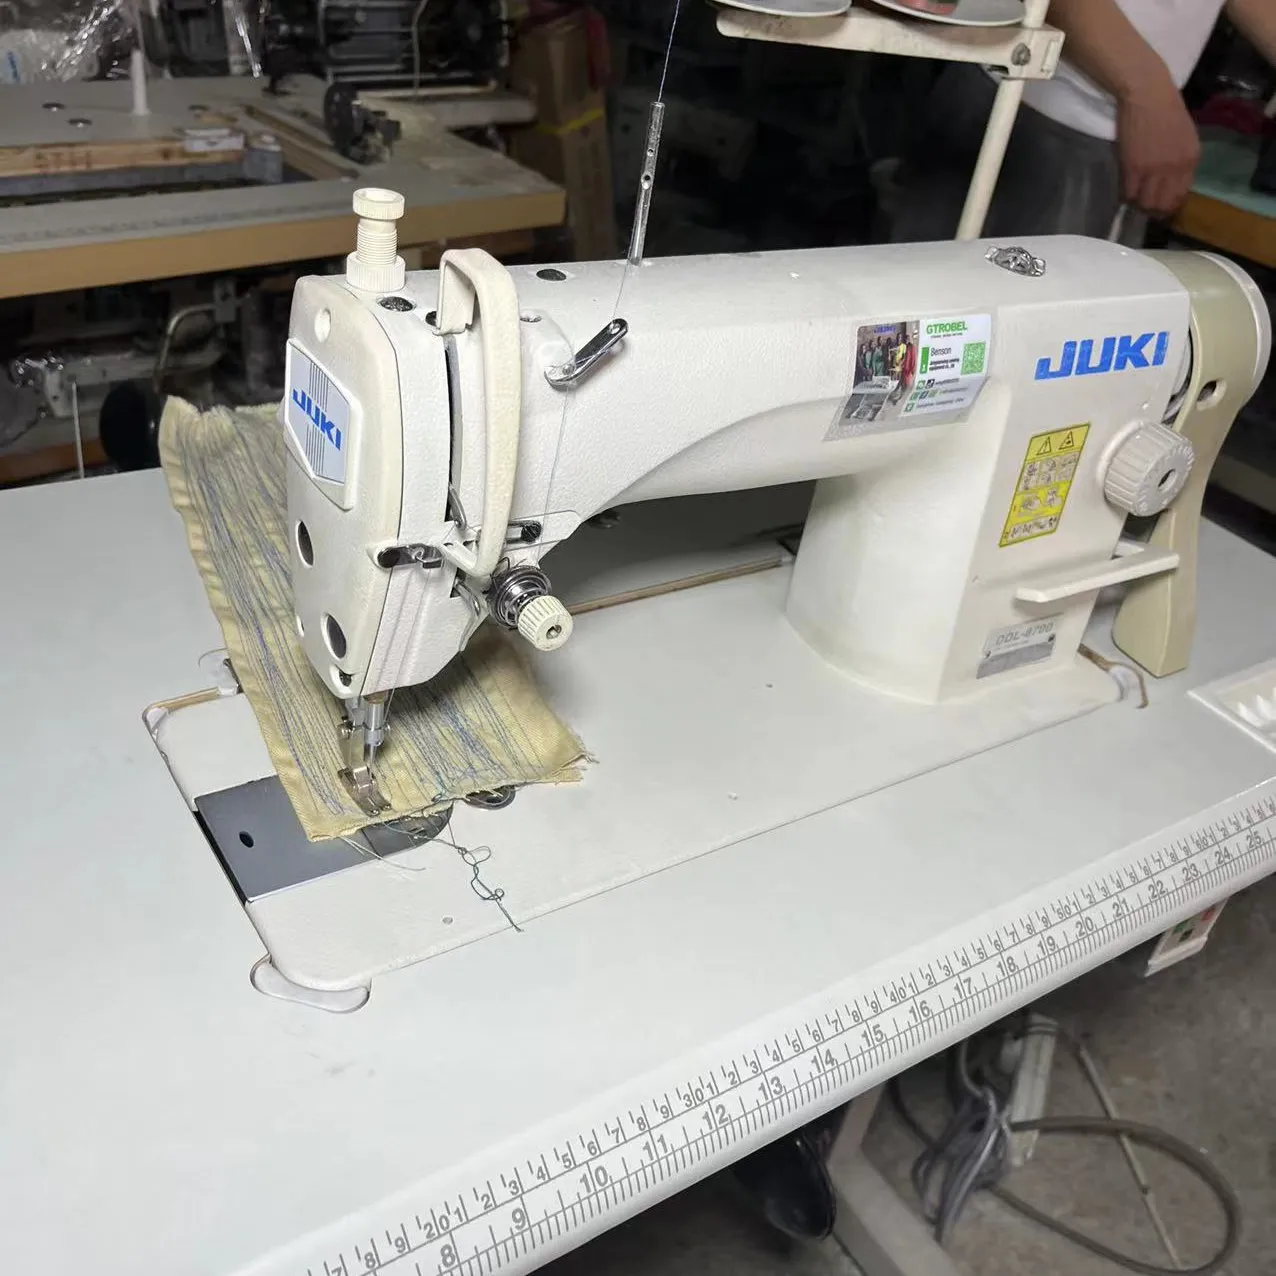 جديدة واضحة جيد مشروط usedjuki 8700 الغرز المتشابكة الصناعية المستخدمة ماكينة خياطة